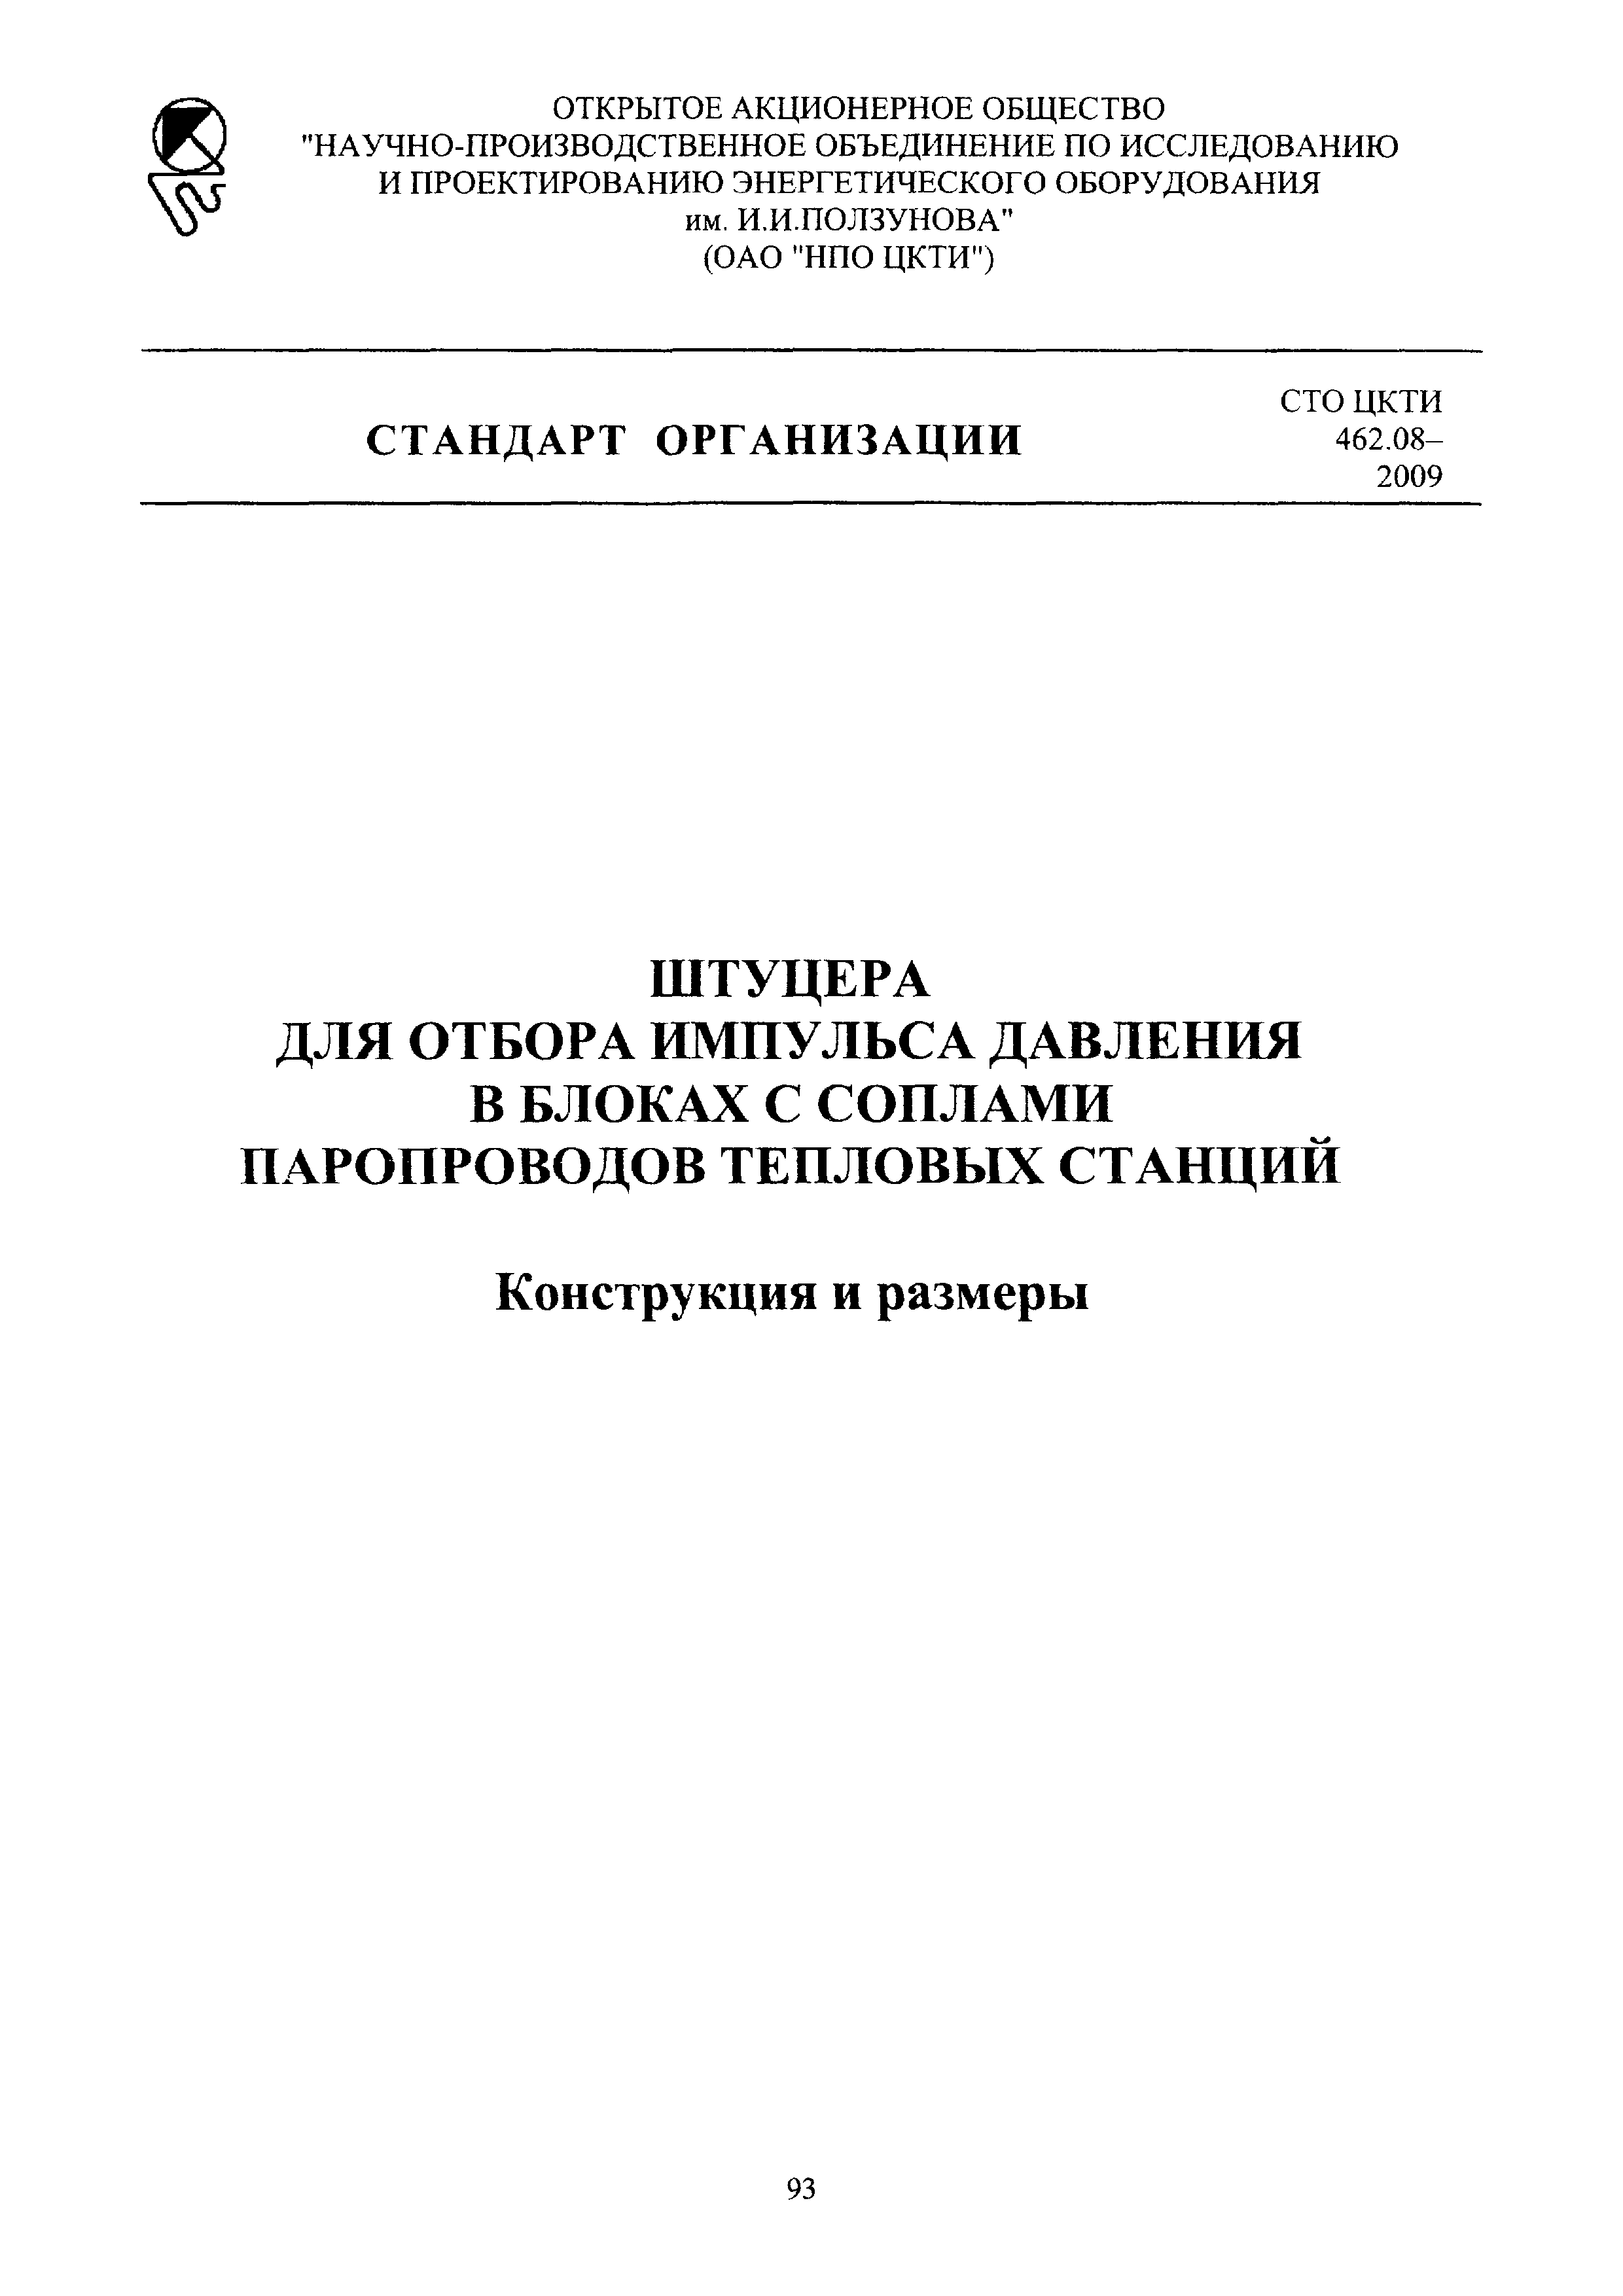 СТО ЦКТИ 462.08-2009